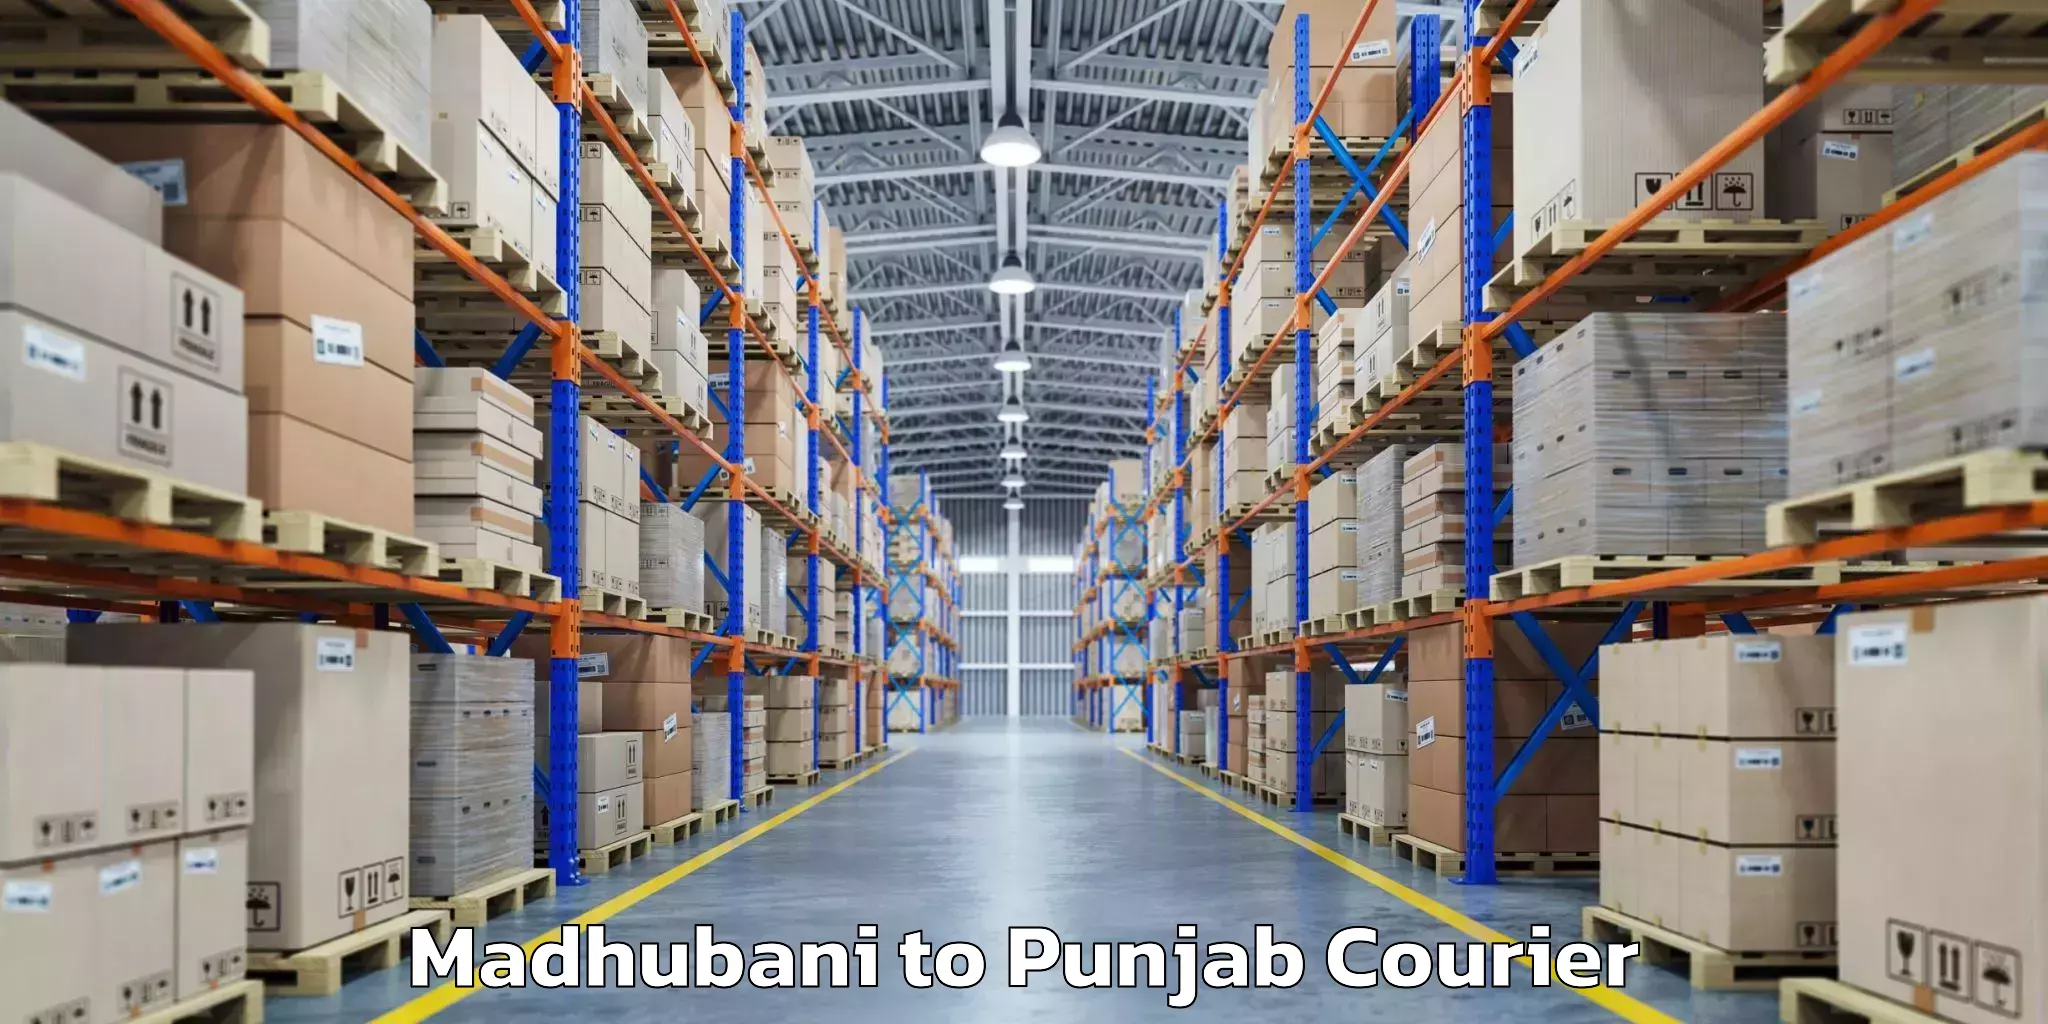 Luggage transport consultancy Madhubani to Punjab